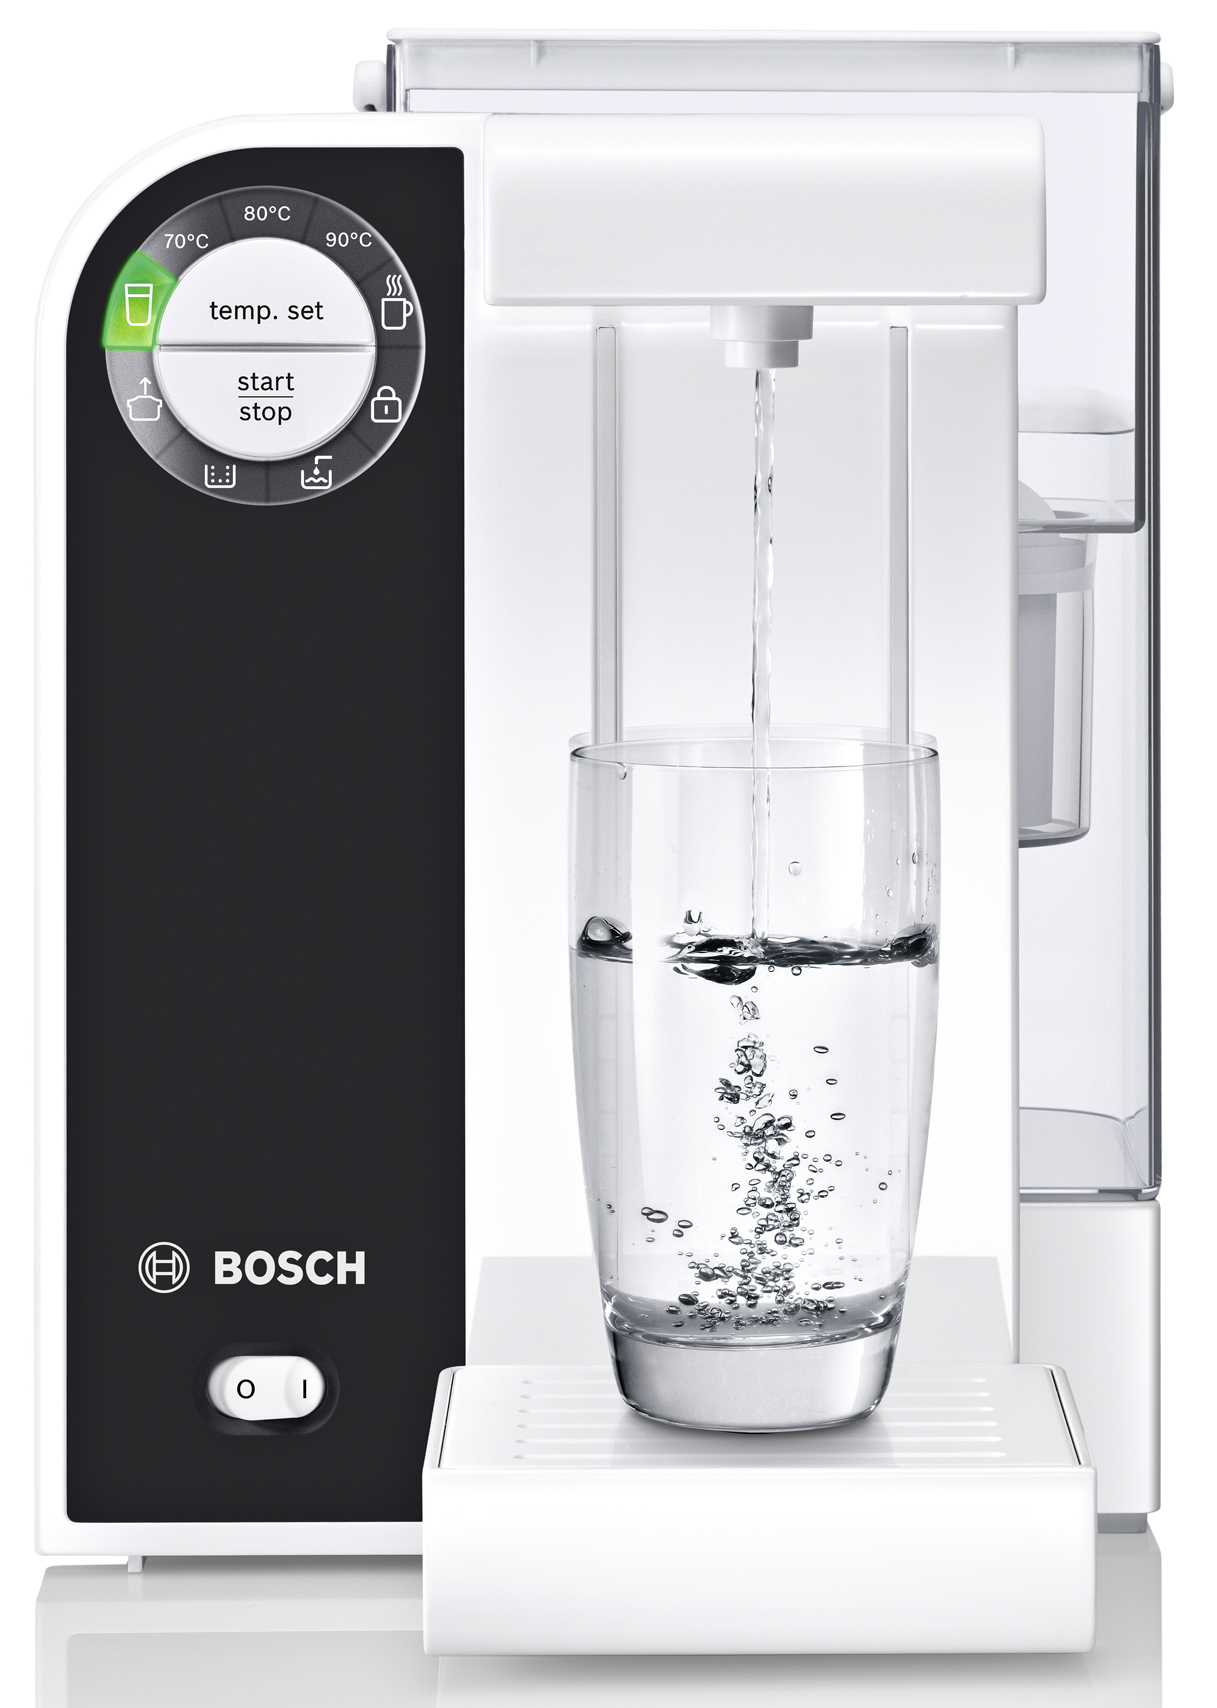 Bosch Wasserkocher Filtrino – Wasserfilter und Kocher in einem Gerät